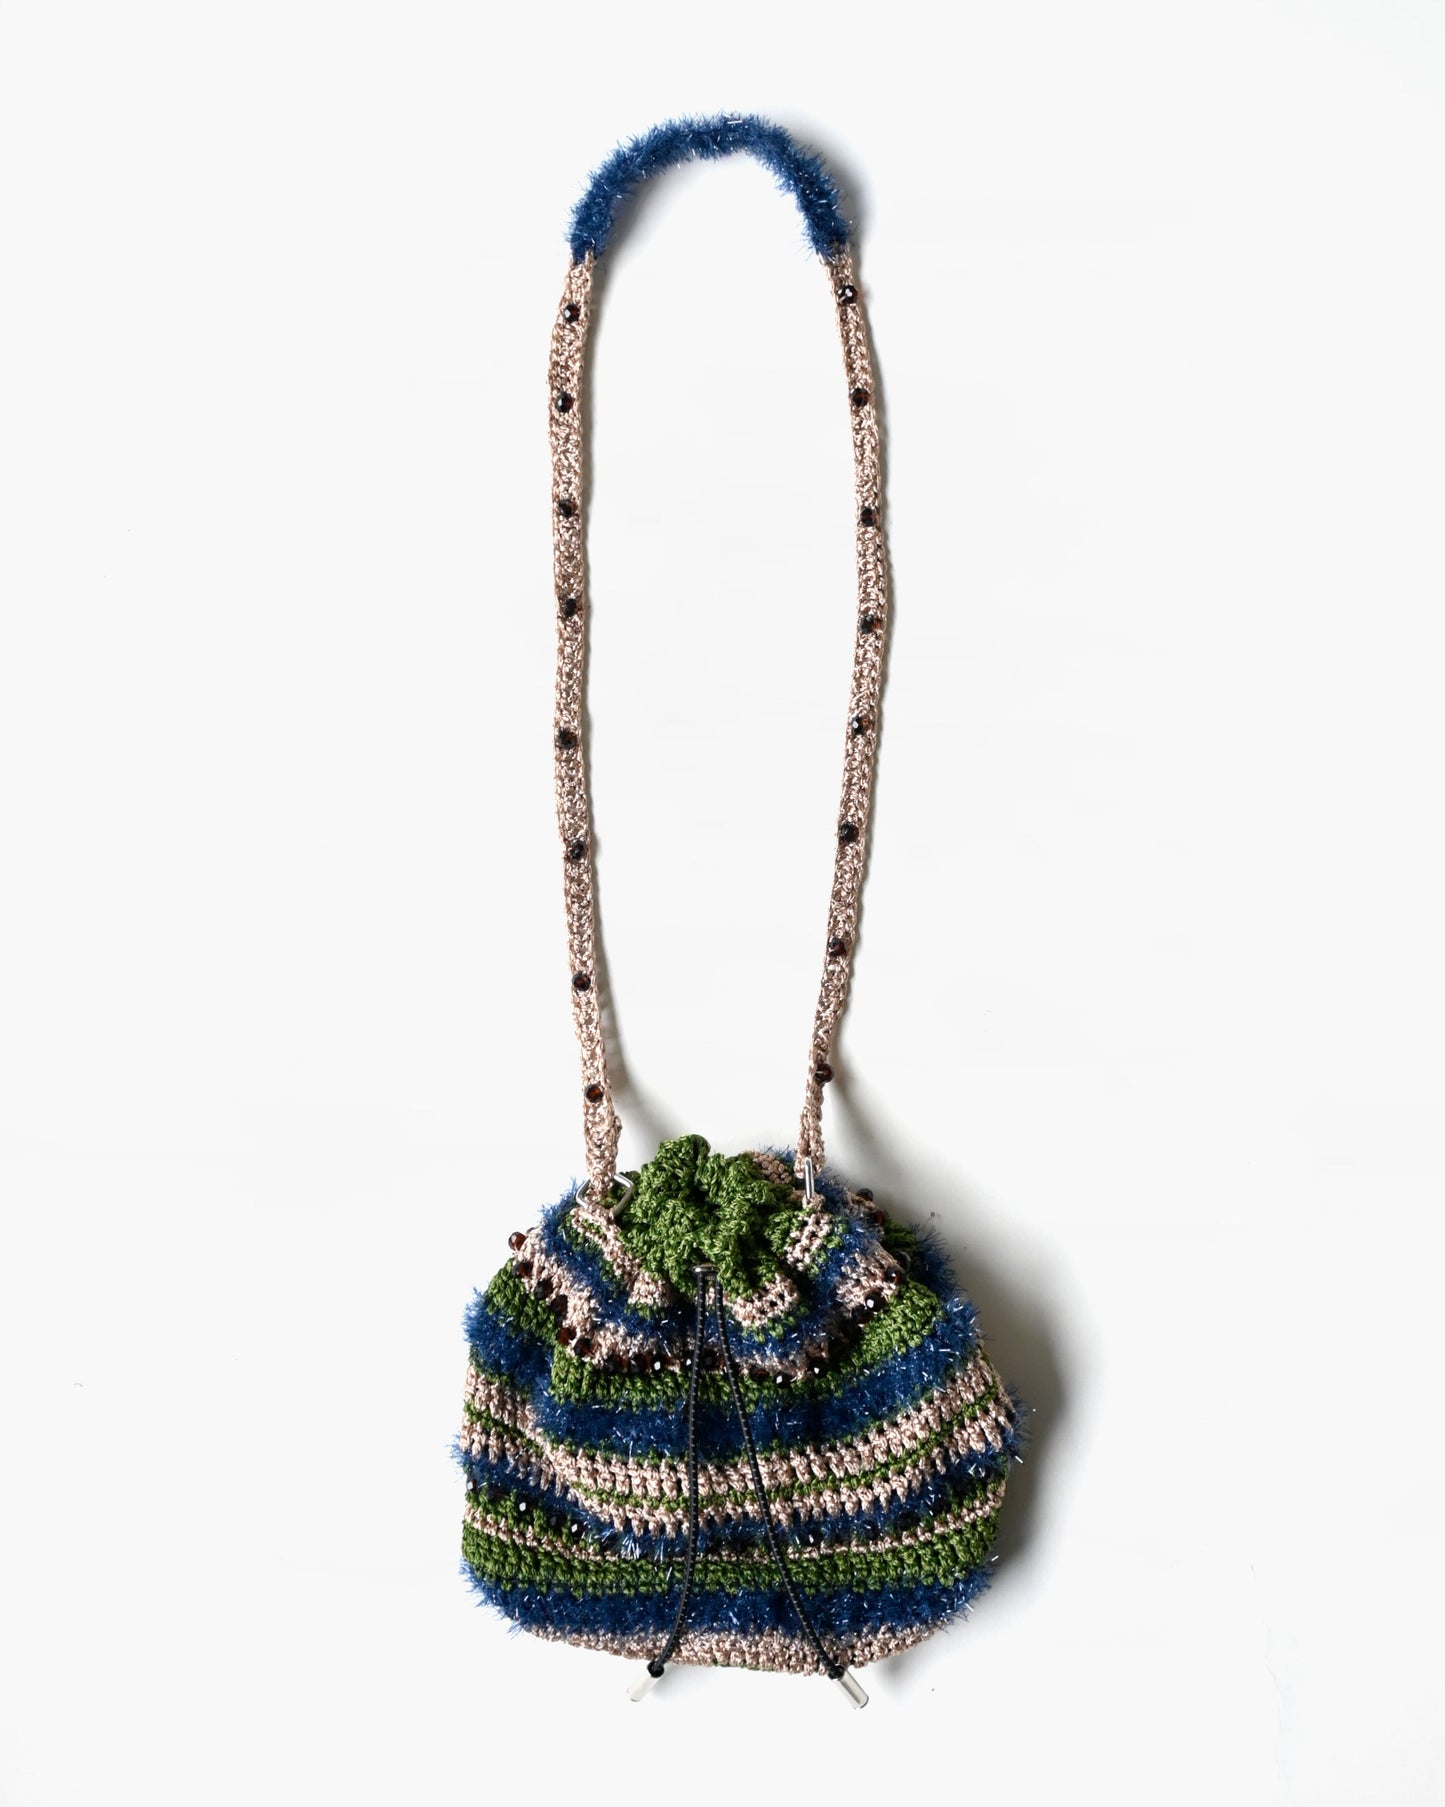 Hand Knitting Bag 01